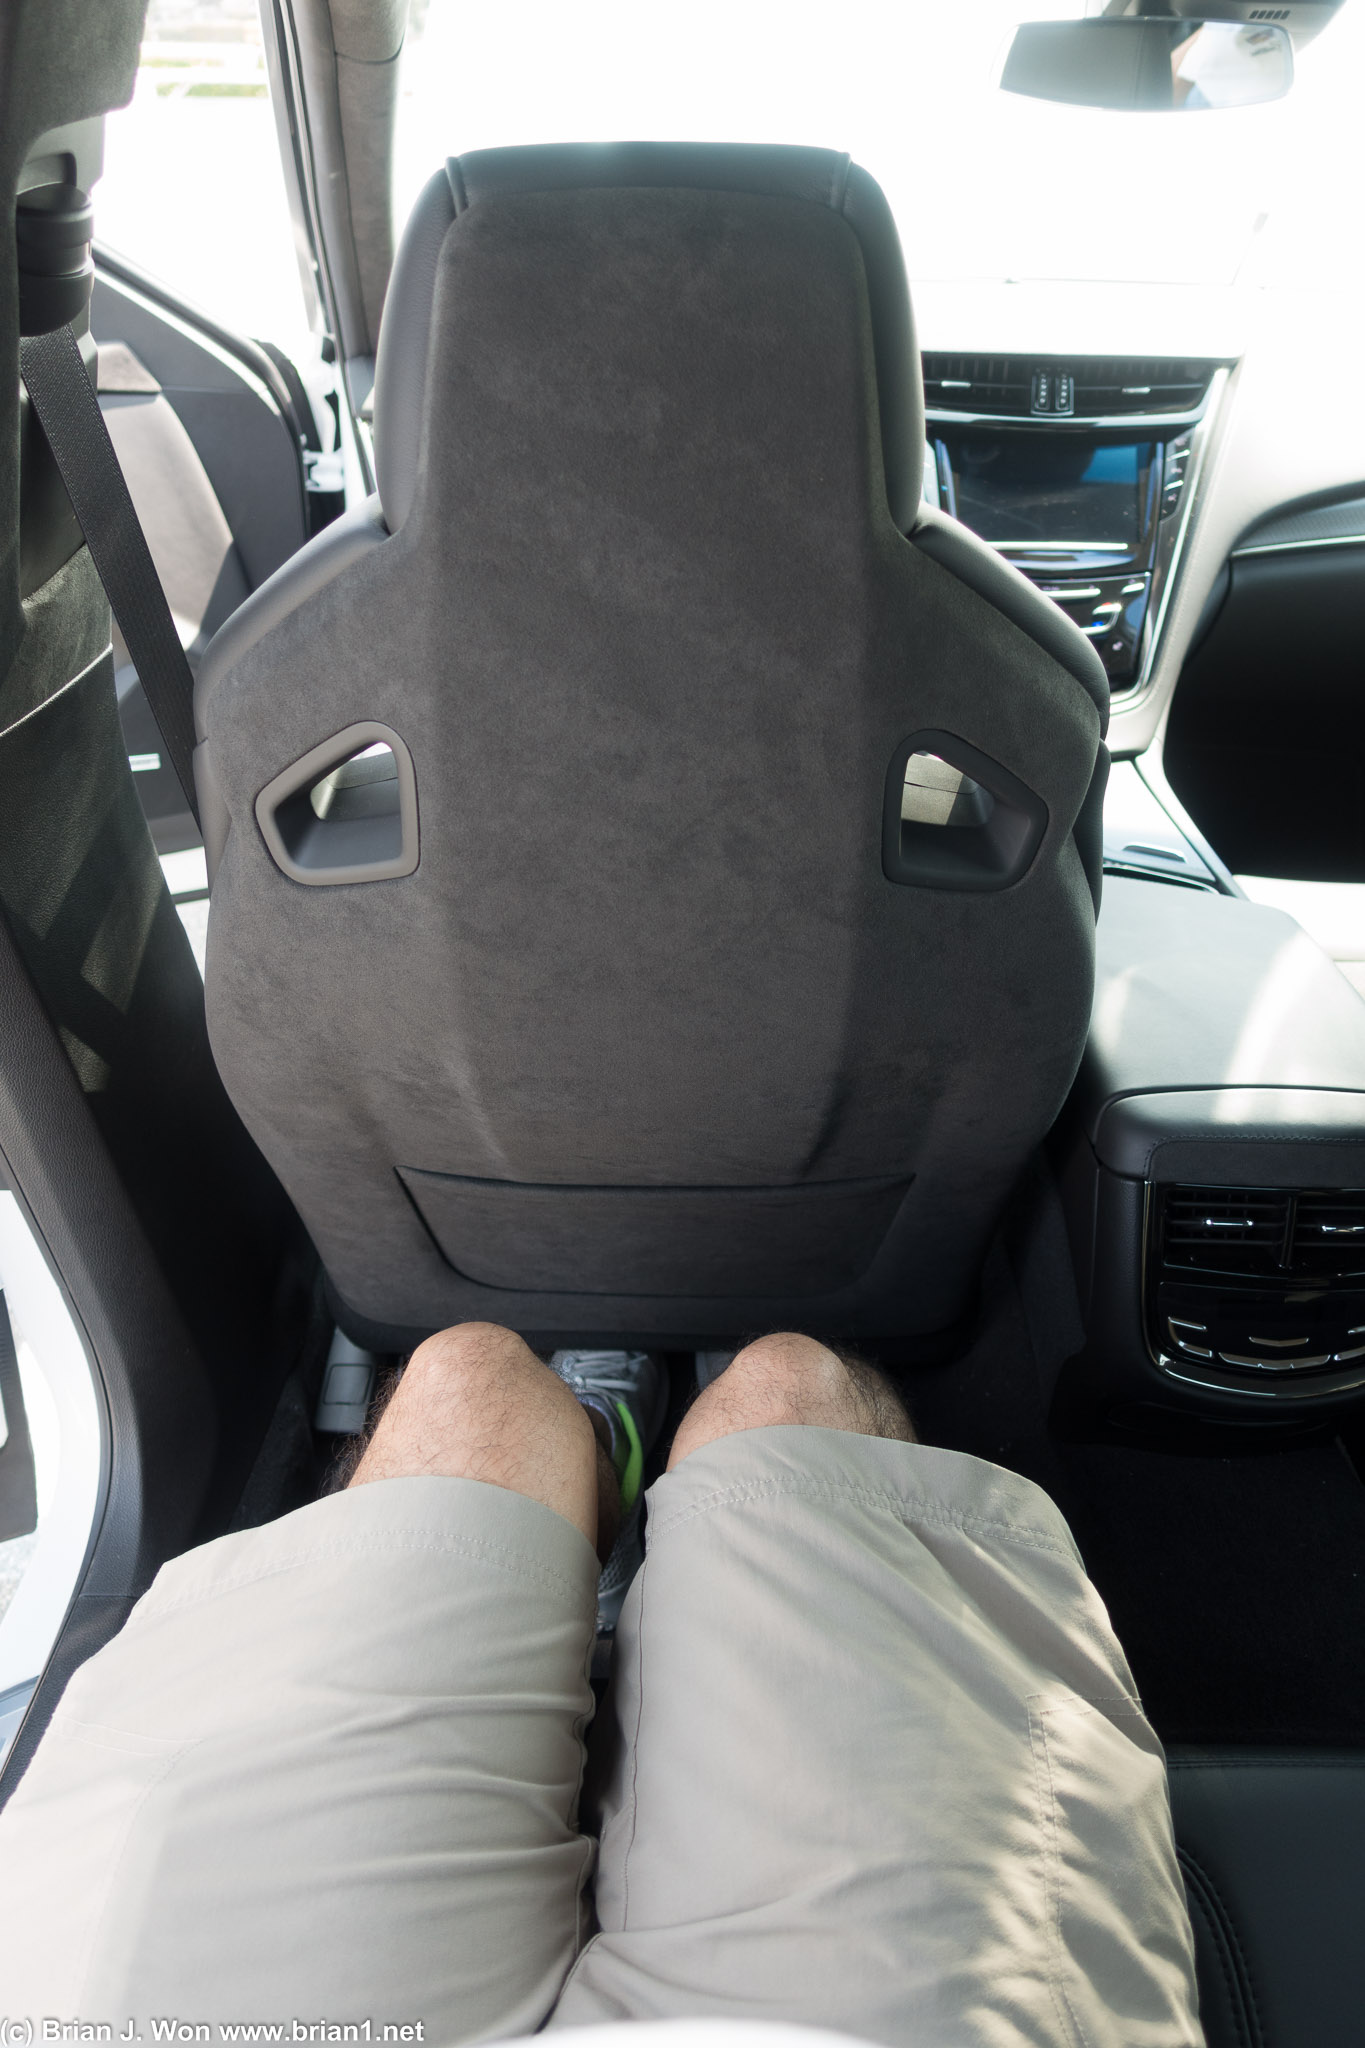 Ample legroom. Sad little seatback pocket.